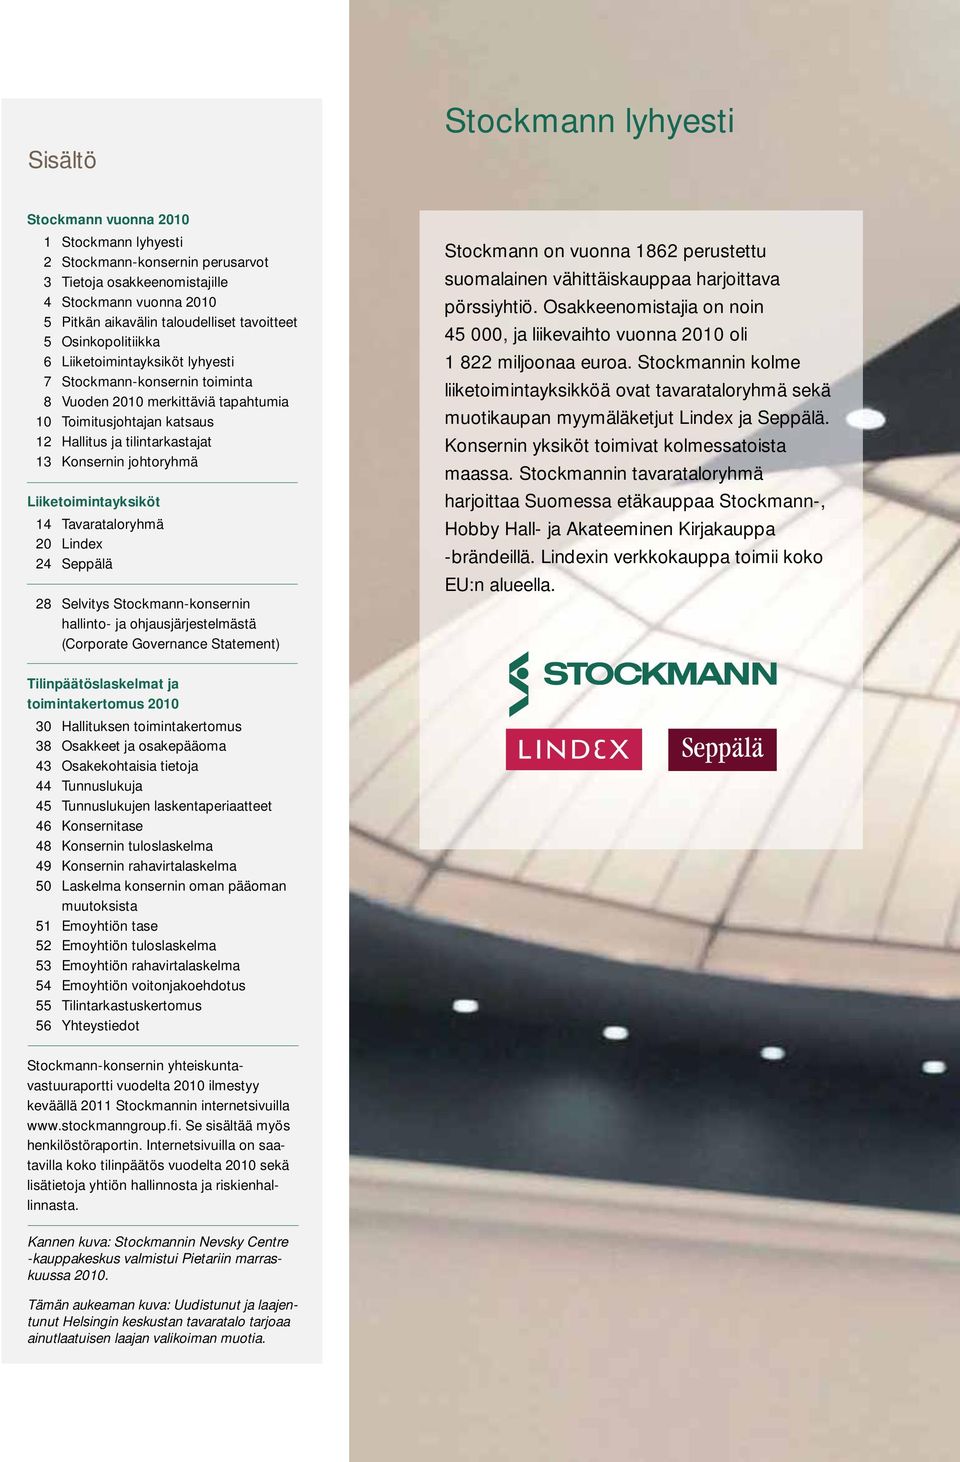 Liiketoimintayksiköt 14 Tavarataloryhmä 2 Lindex 24 Seppälä 28 Selvitys Stockmann-konsernin hallinto- ja ohjausjärjestelmästä (Corporate Governance Statement) Stockmann on vuonna 1862 perustettu